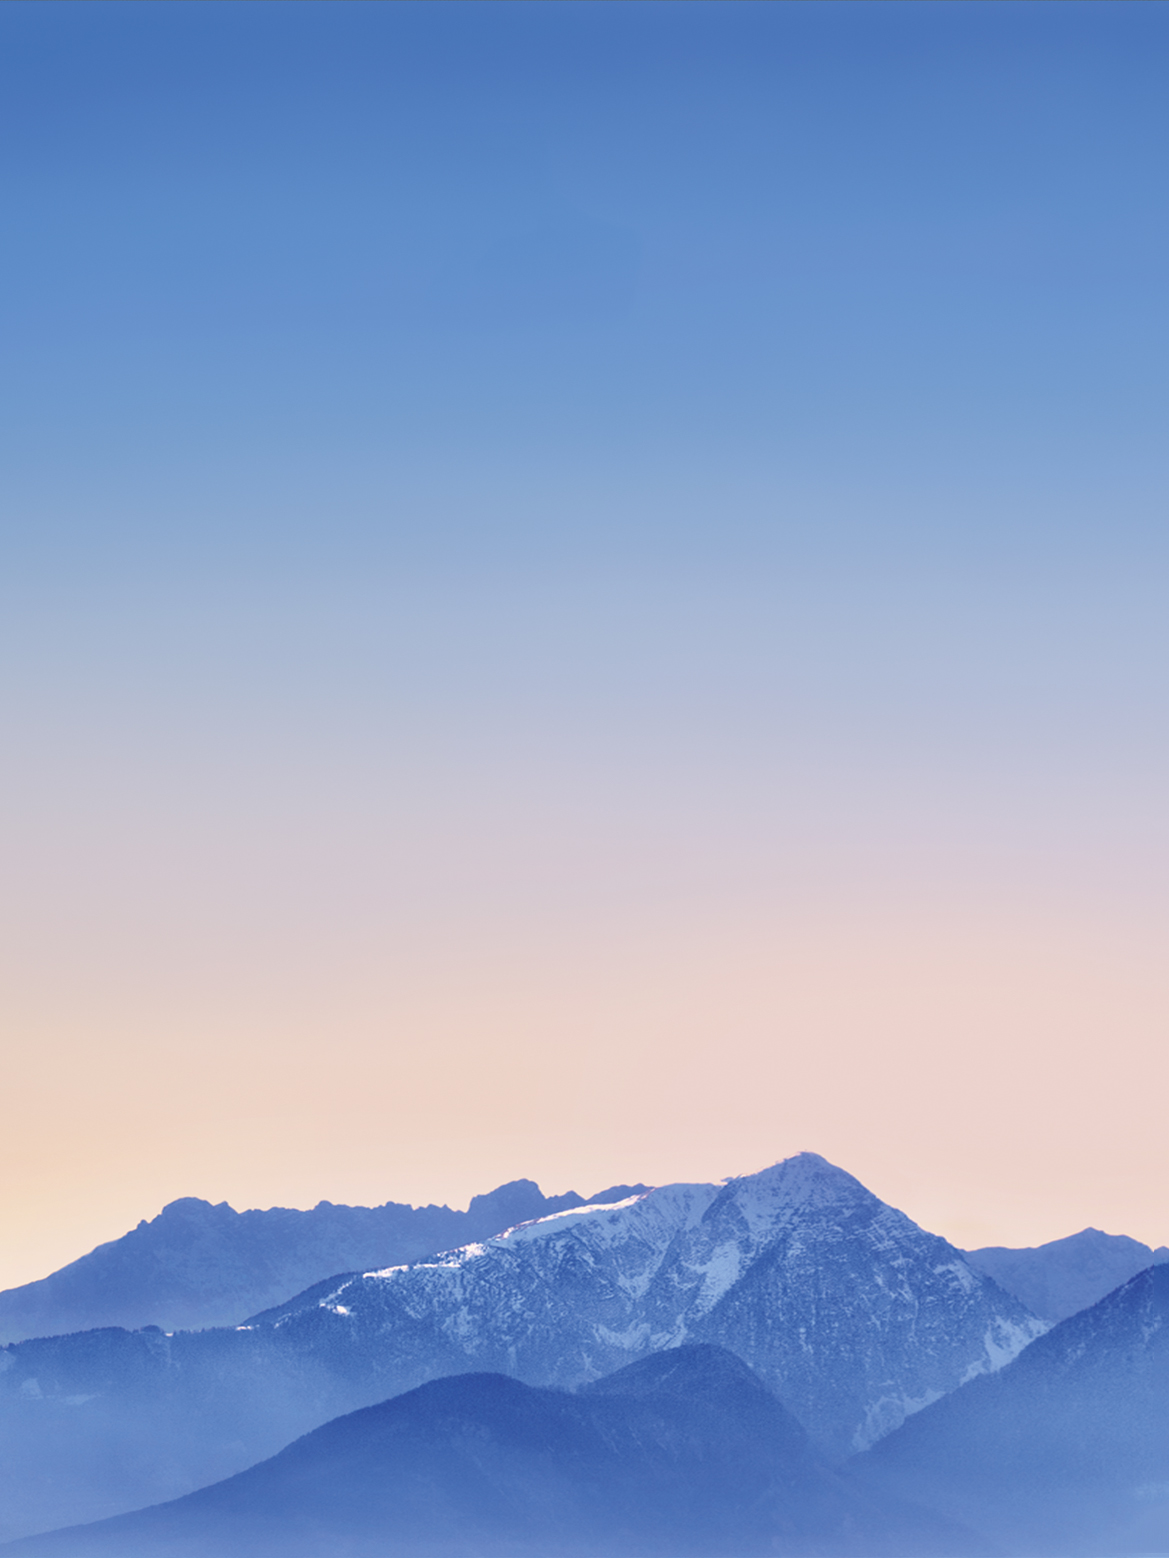 ipad air wallpaper,sky,mountainous landforms,mountain,blue,mountain range